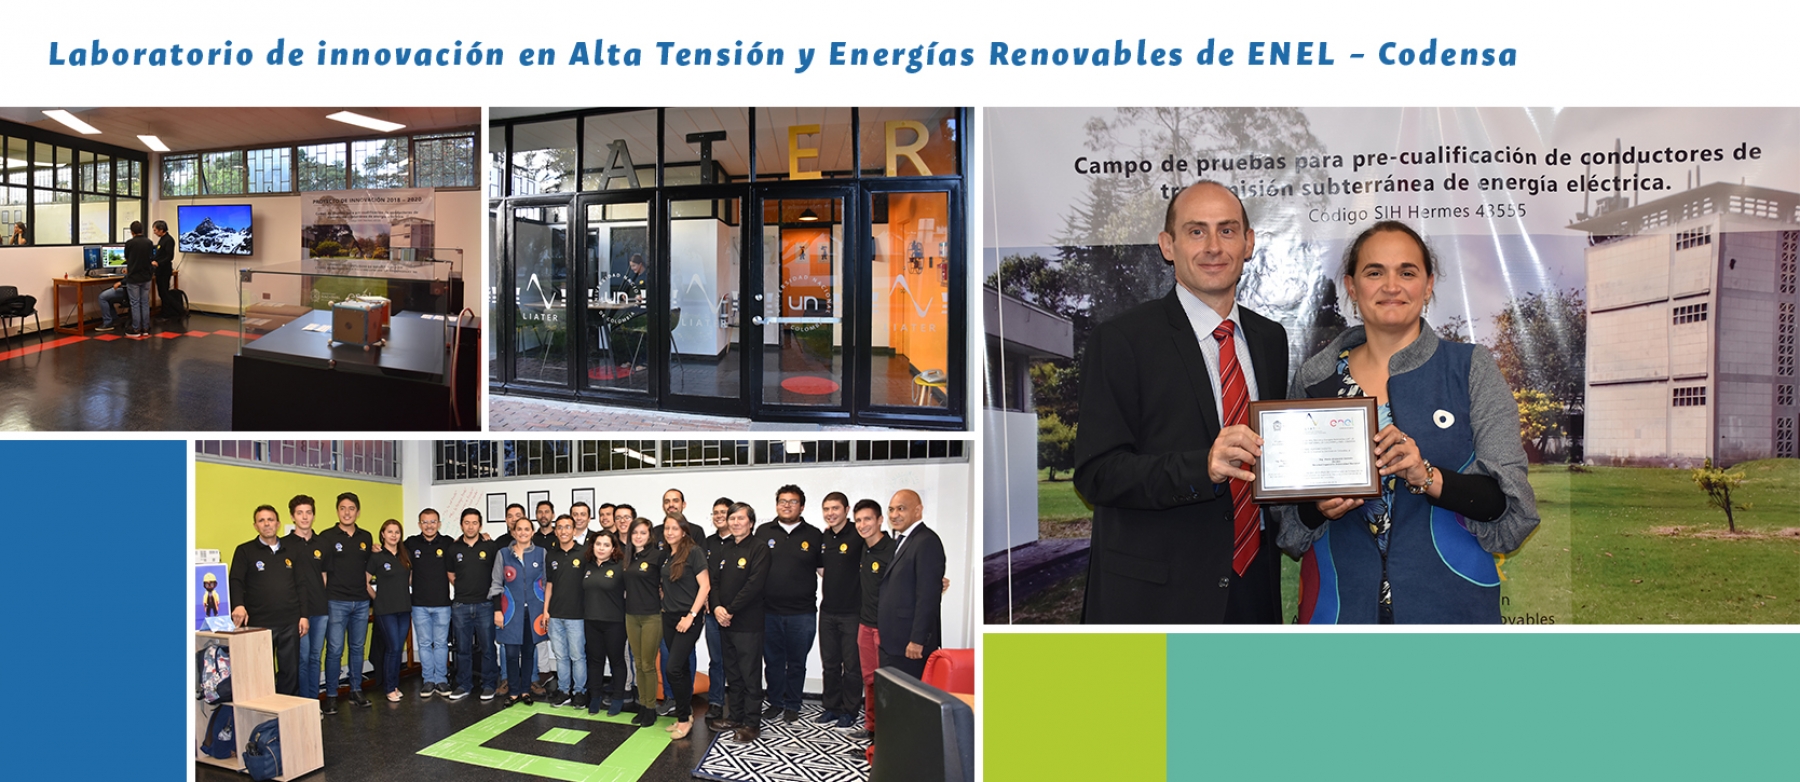 Facultad de Ingeniería presenta laboratorio de innovación en alta tensión y energías renovables « LIATER »